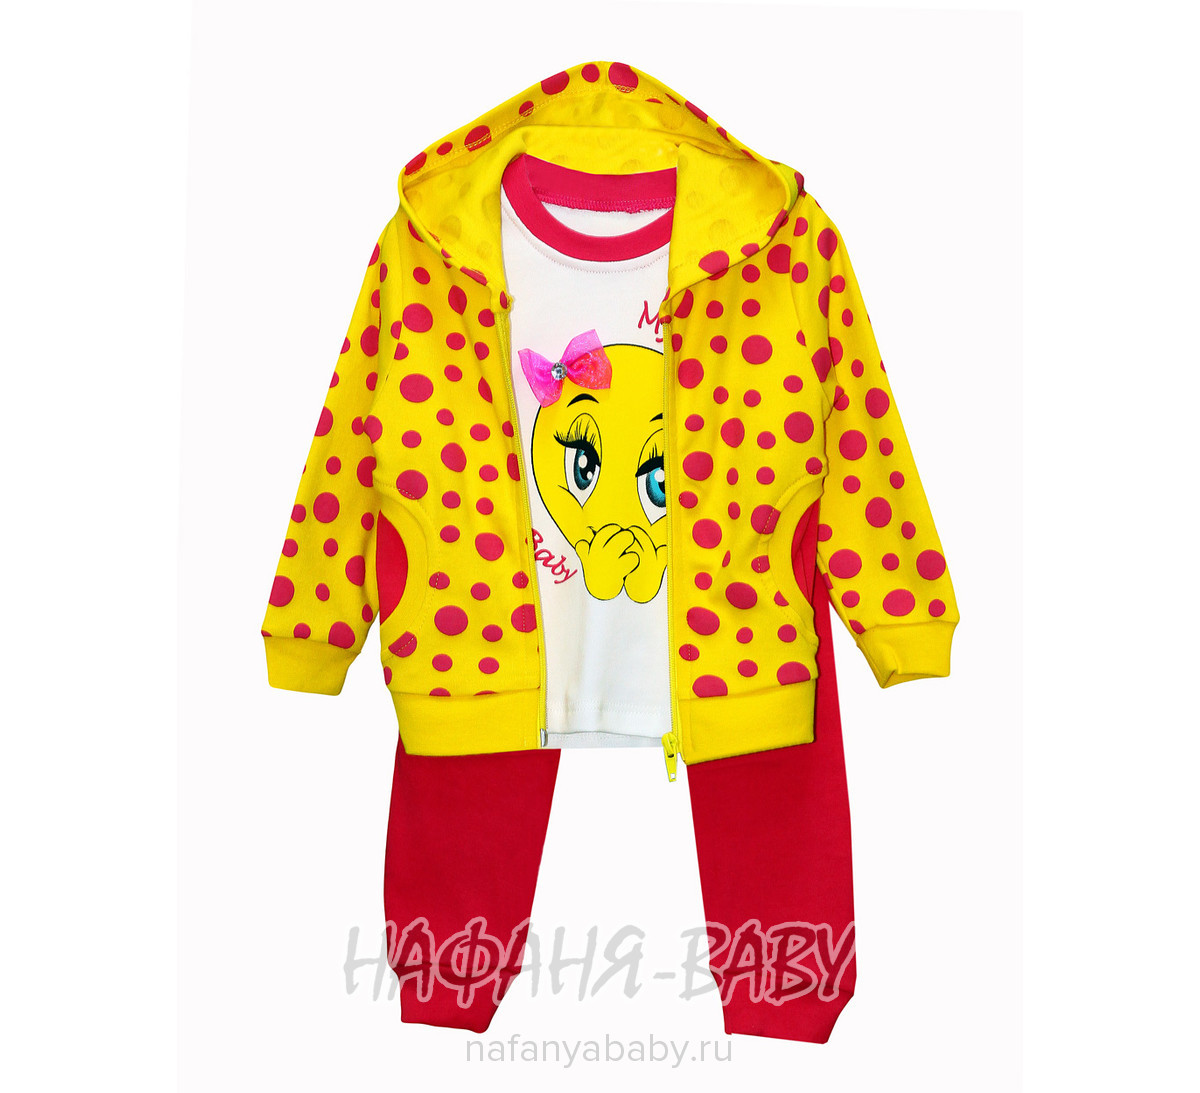 Трикотажный костюм для малышей NECIXS арт: 9036, 1-4 года, 0-12 мес, оптом Турция